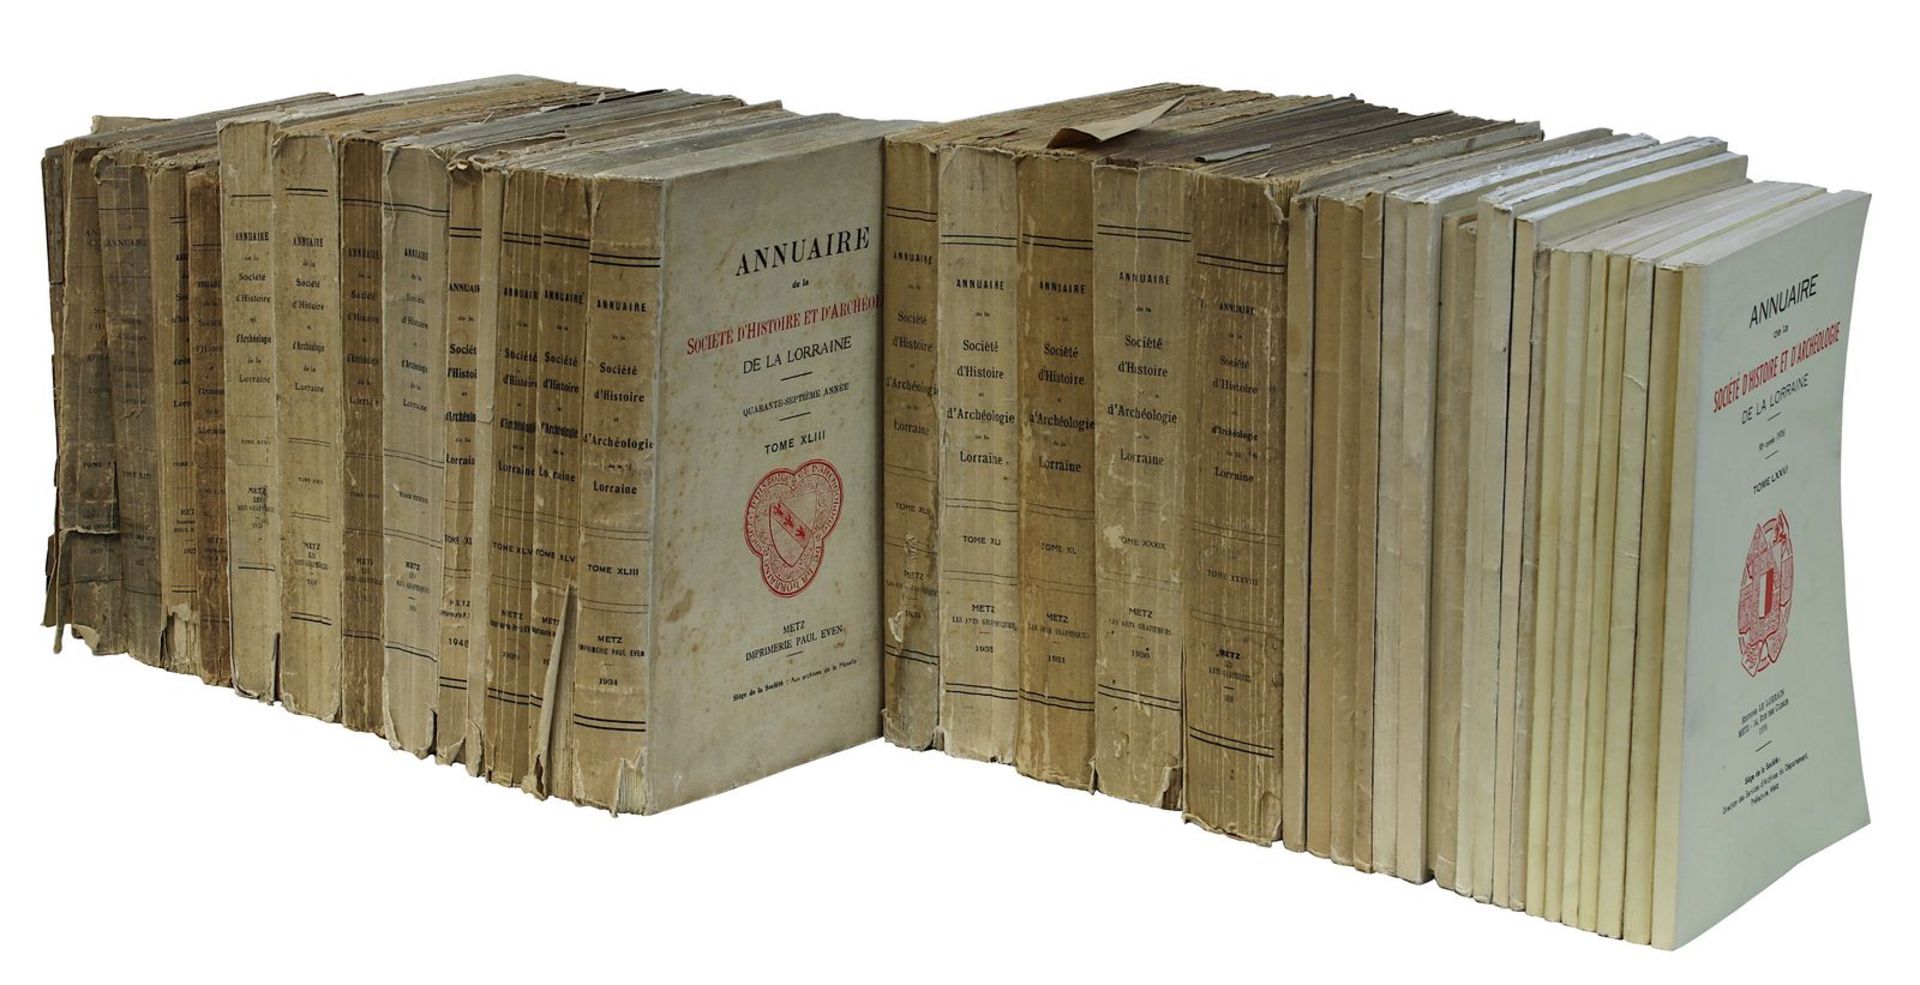 Konvolut von 38 Bänden des "Annuaire de la société d'histoire et d'archéologie de la lorraine",